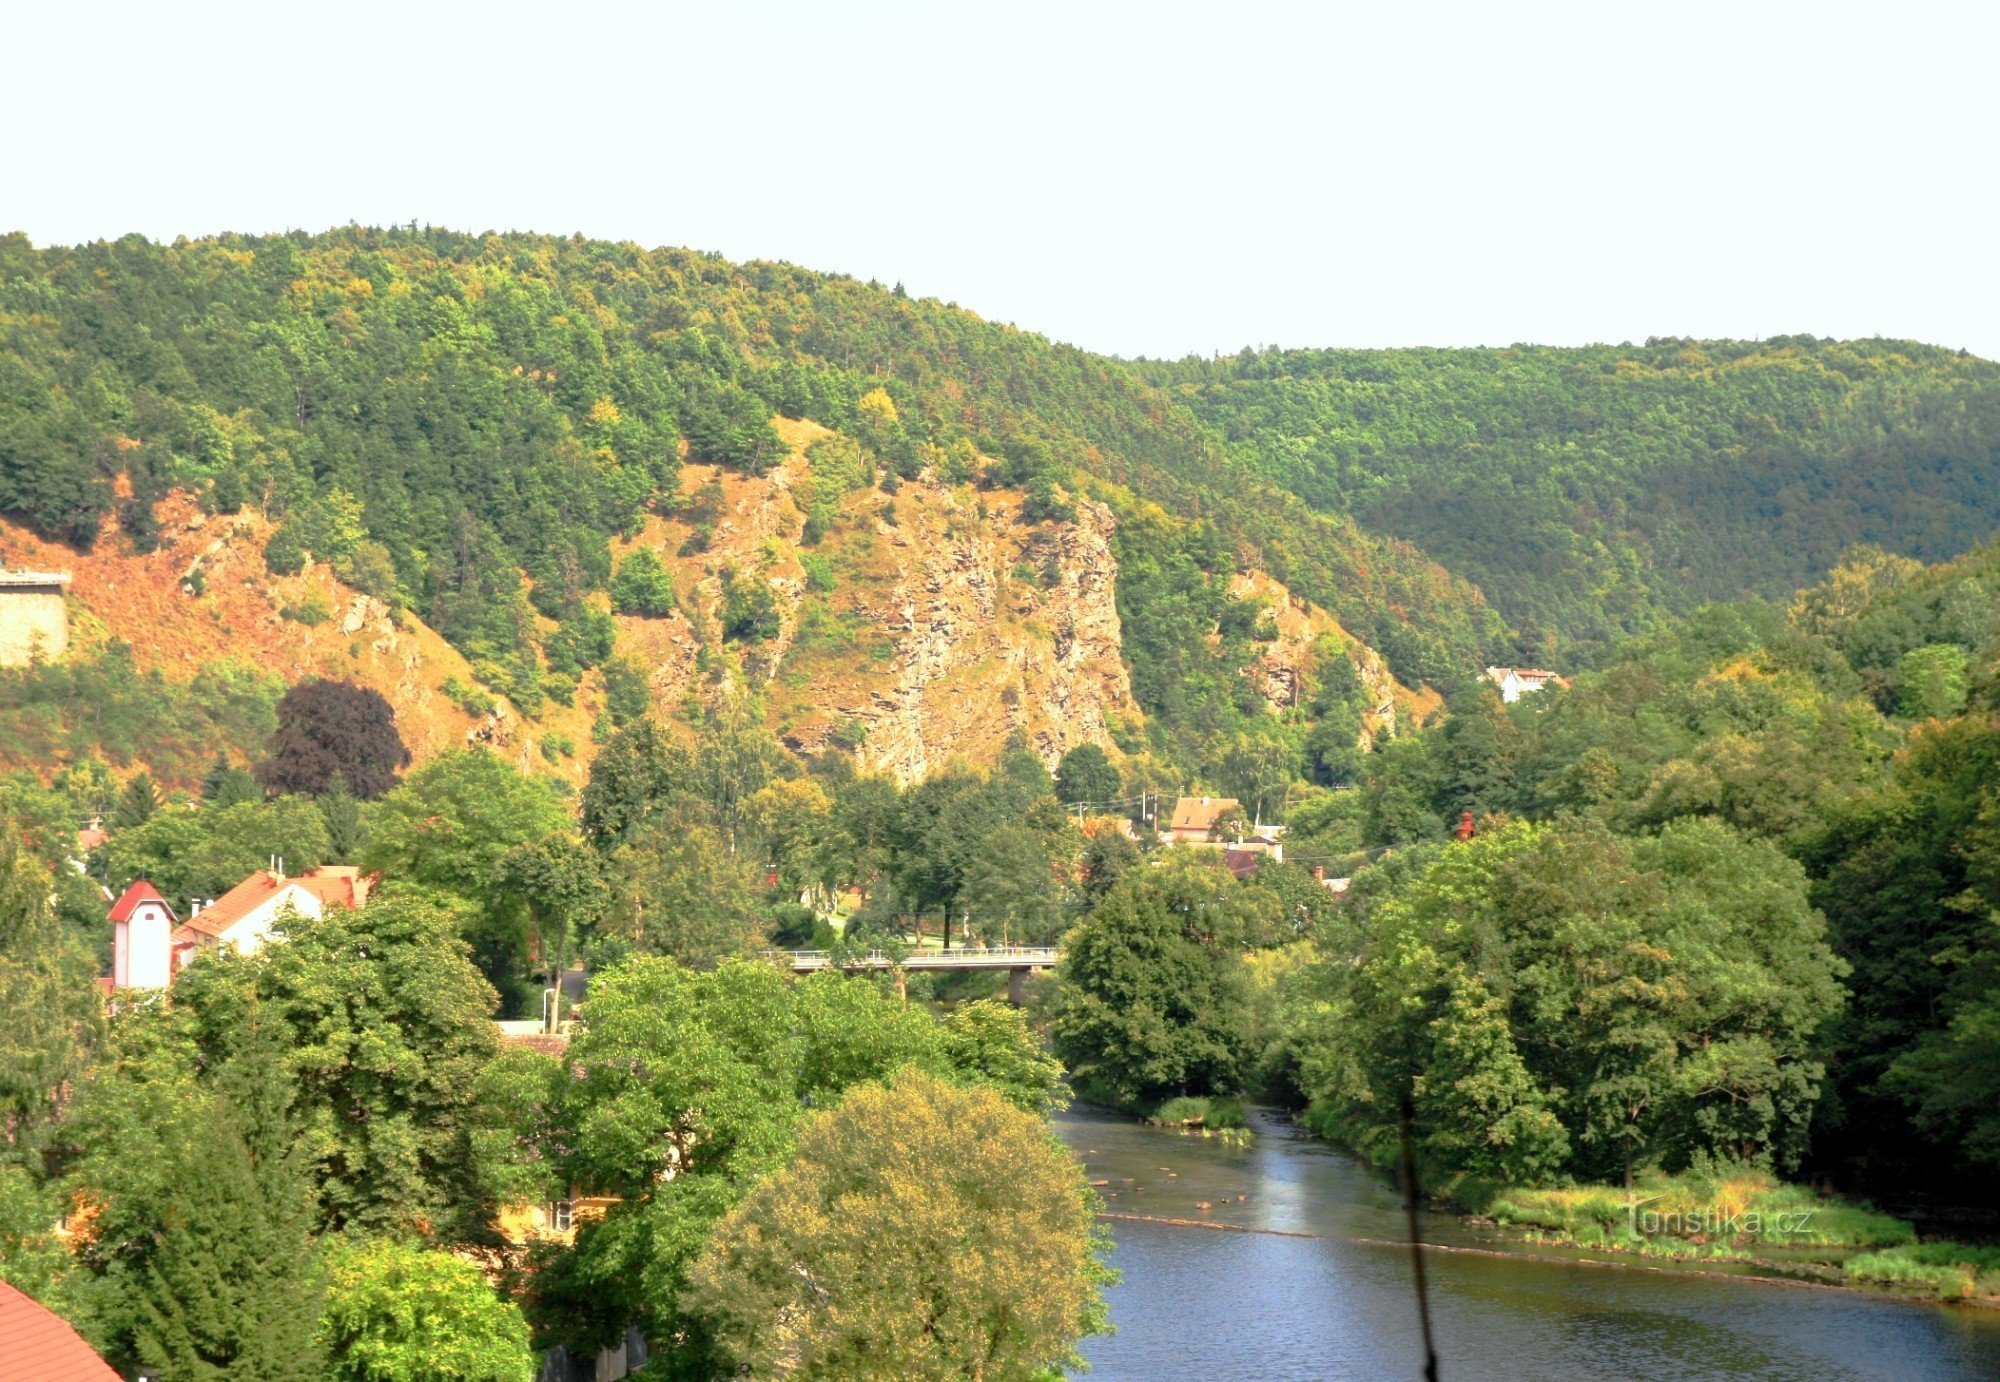 Hamerské údolí iz dvorca Vranov